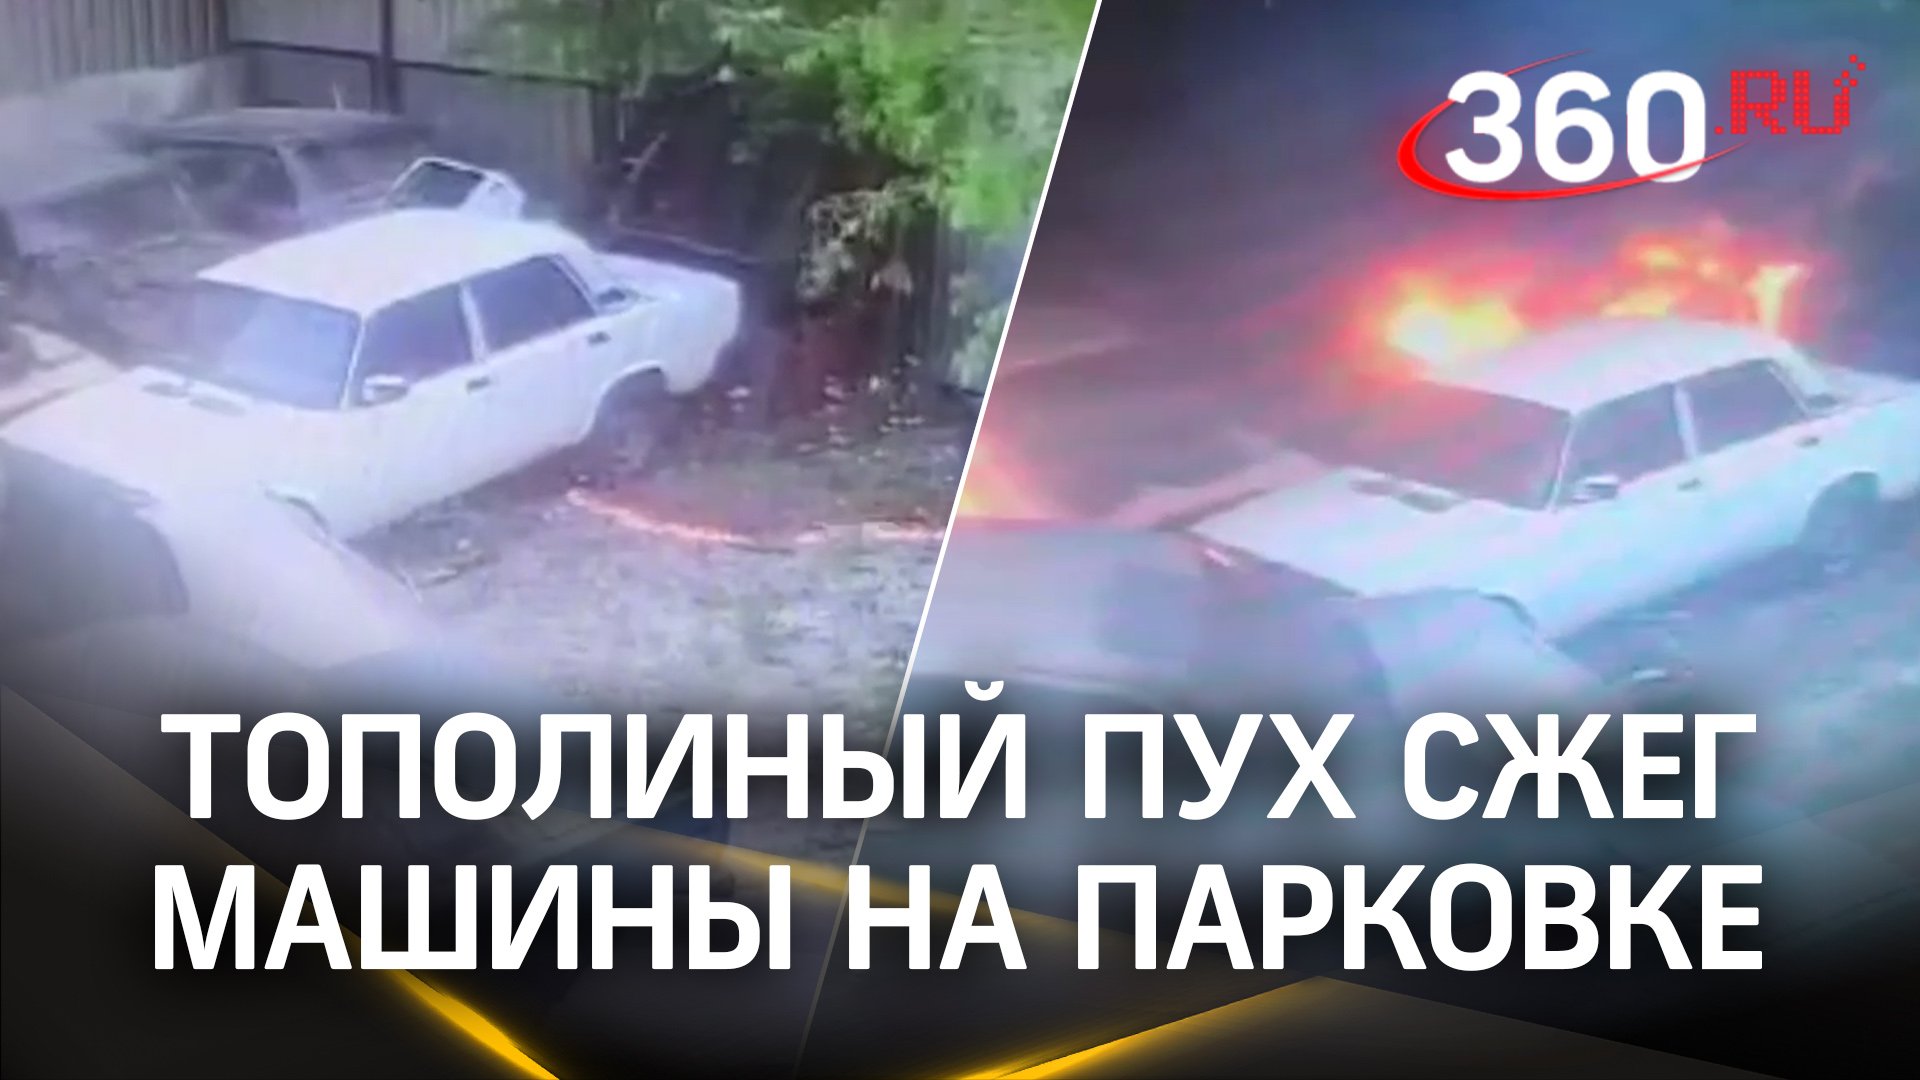 Видео: тополиный пух сжигает машины на парковке.